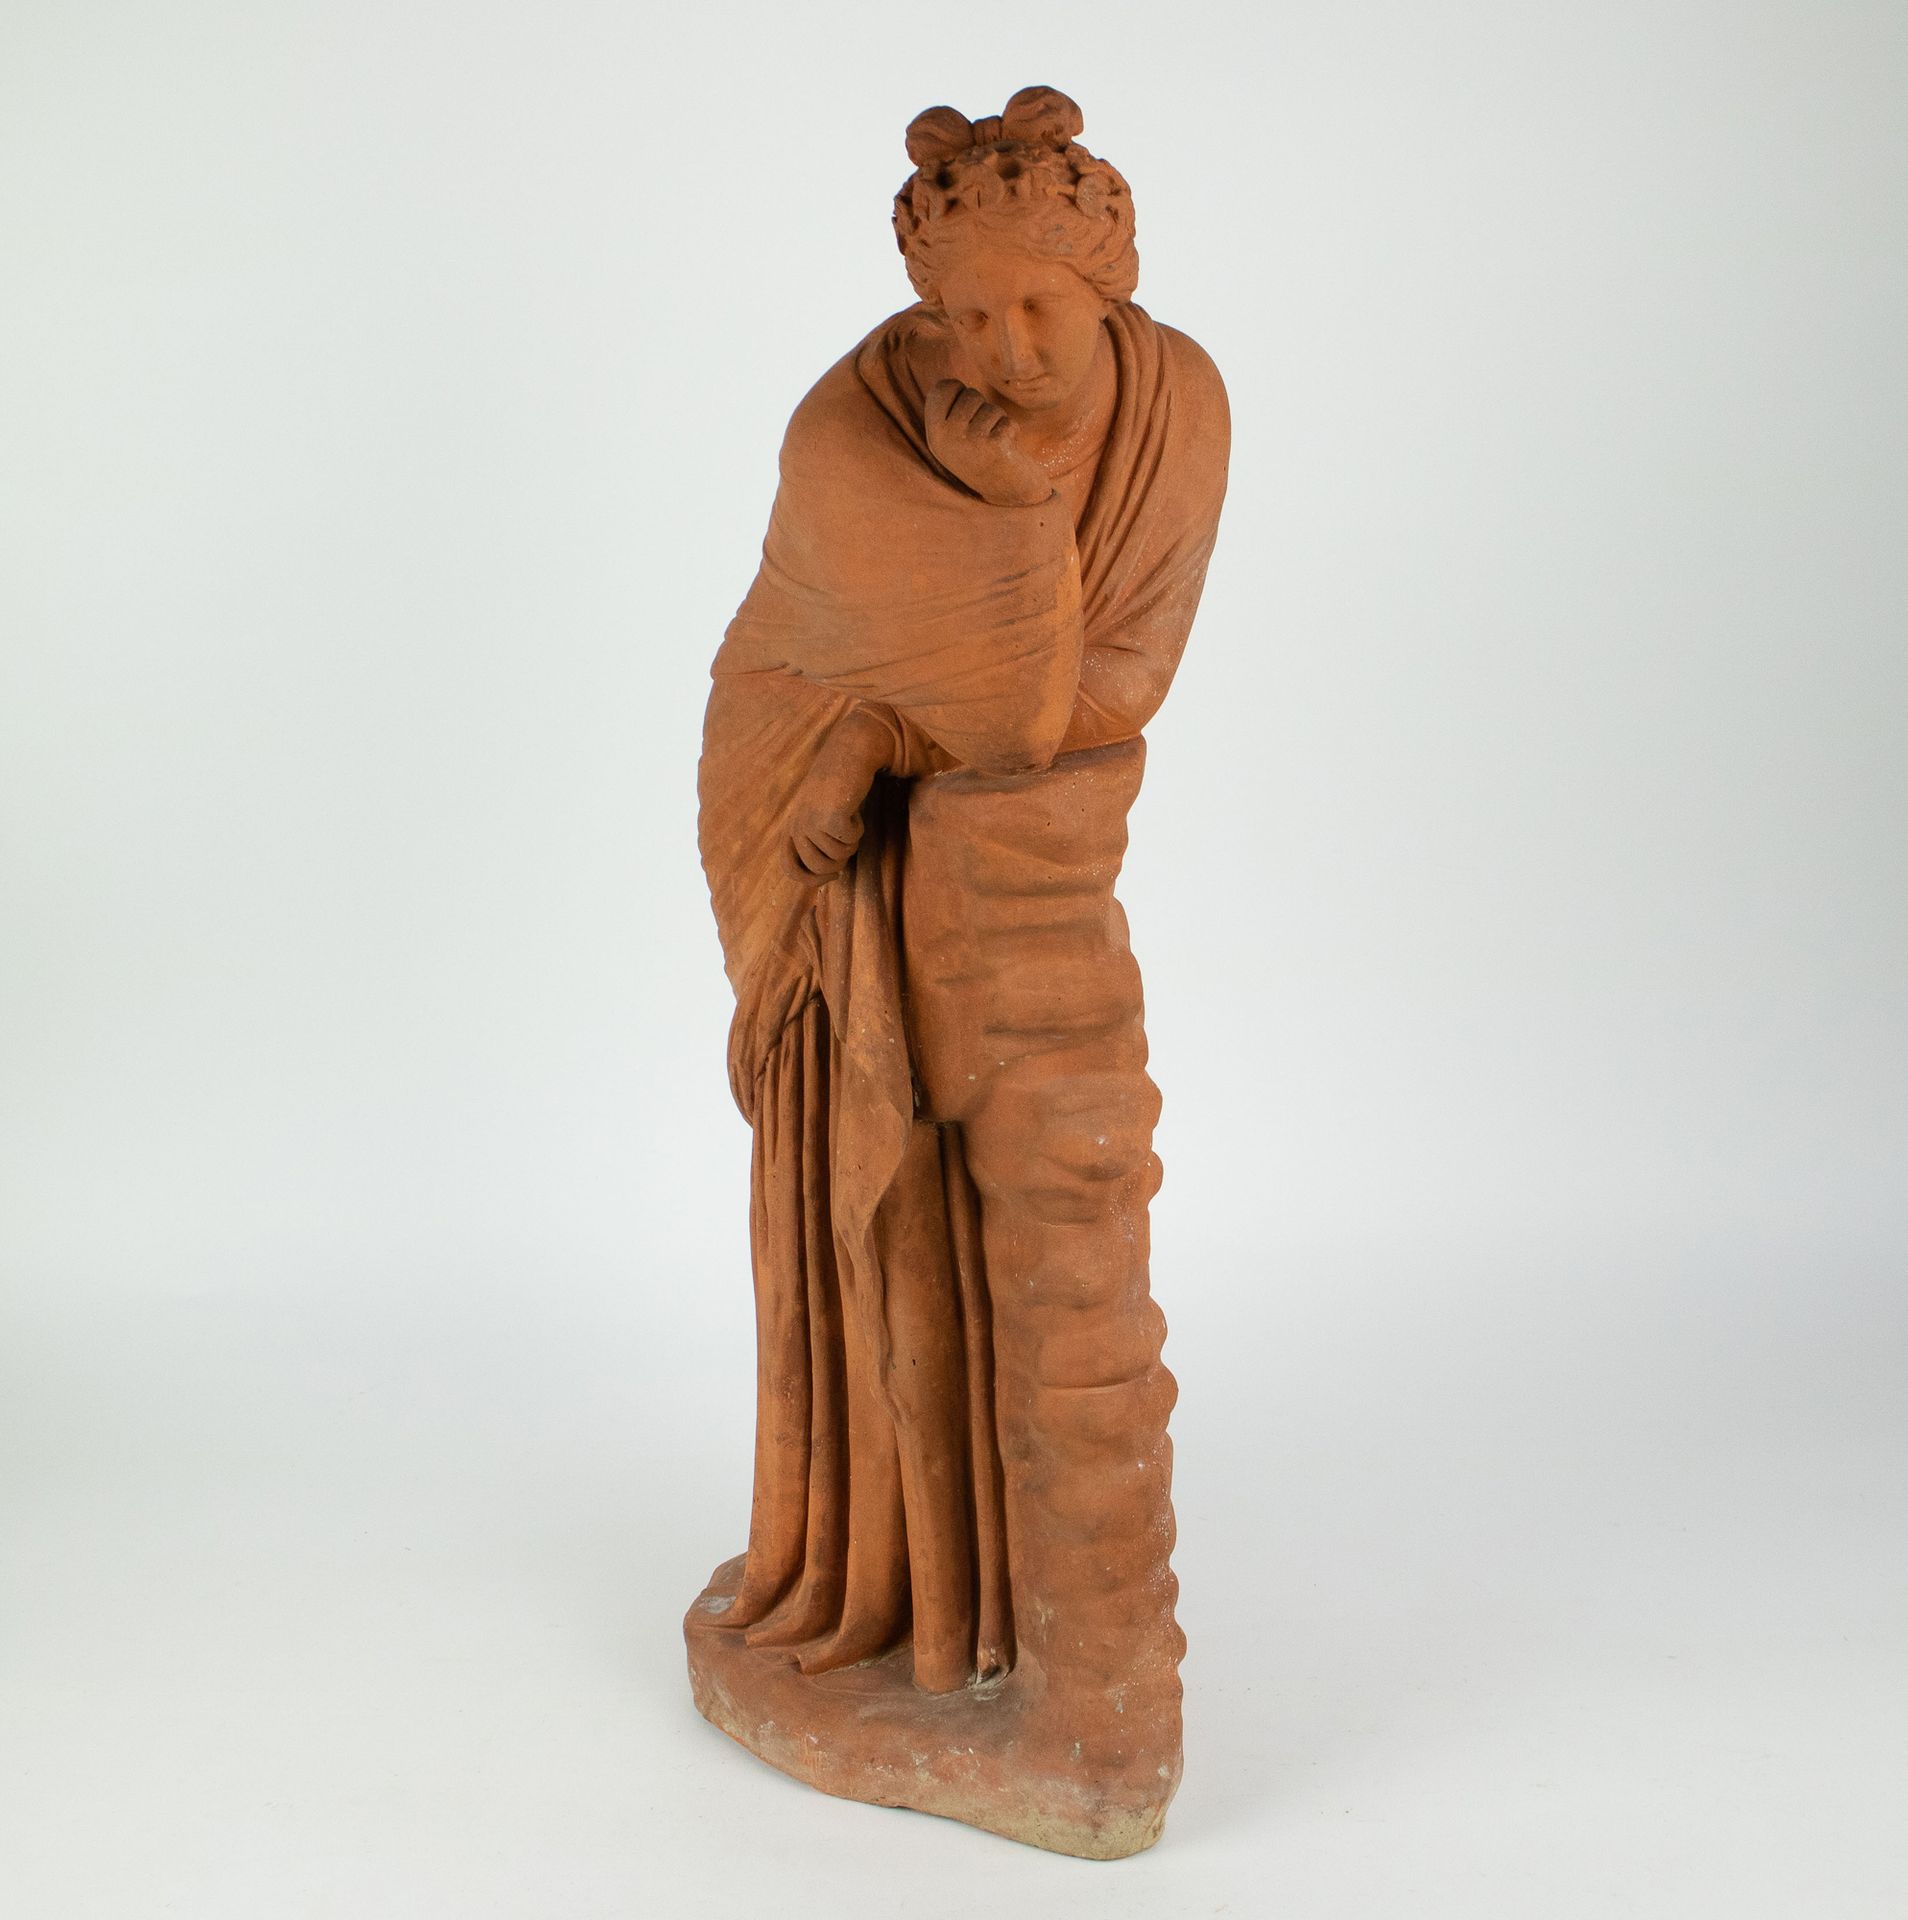 Null 希腊女人的陶器雕塑
希腊女人的陶器雕塑 Een Terracotta sculptuur van een Griekse vrouw.高70.5厘米
&hellip;